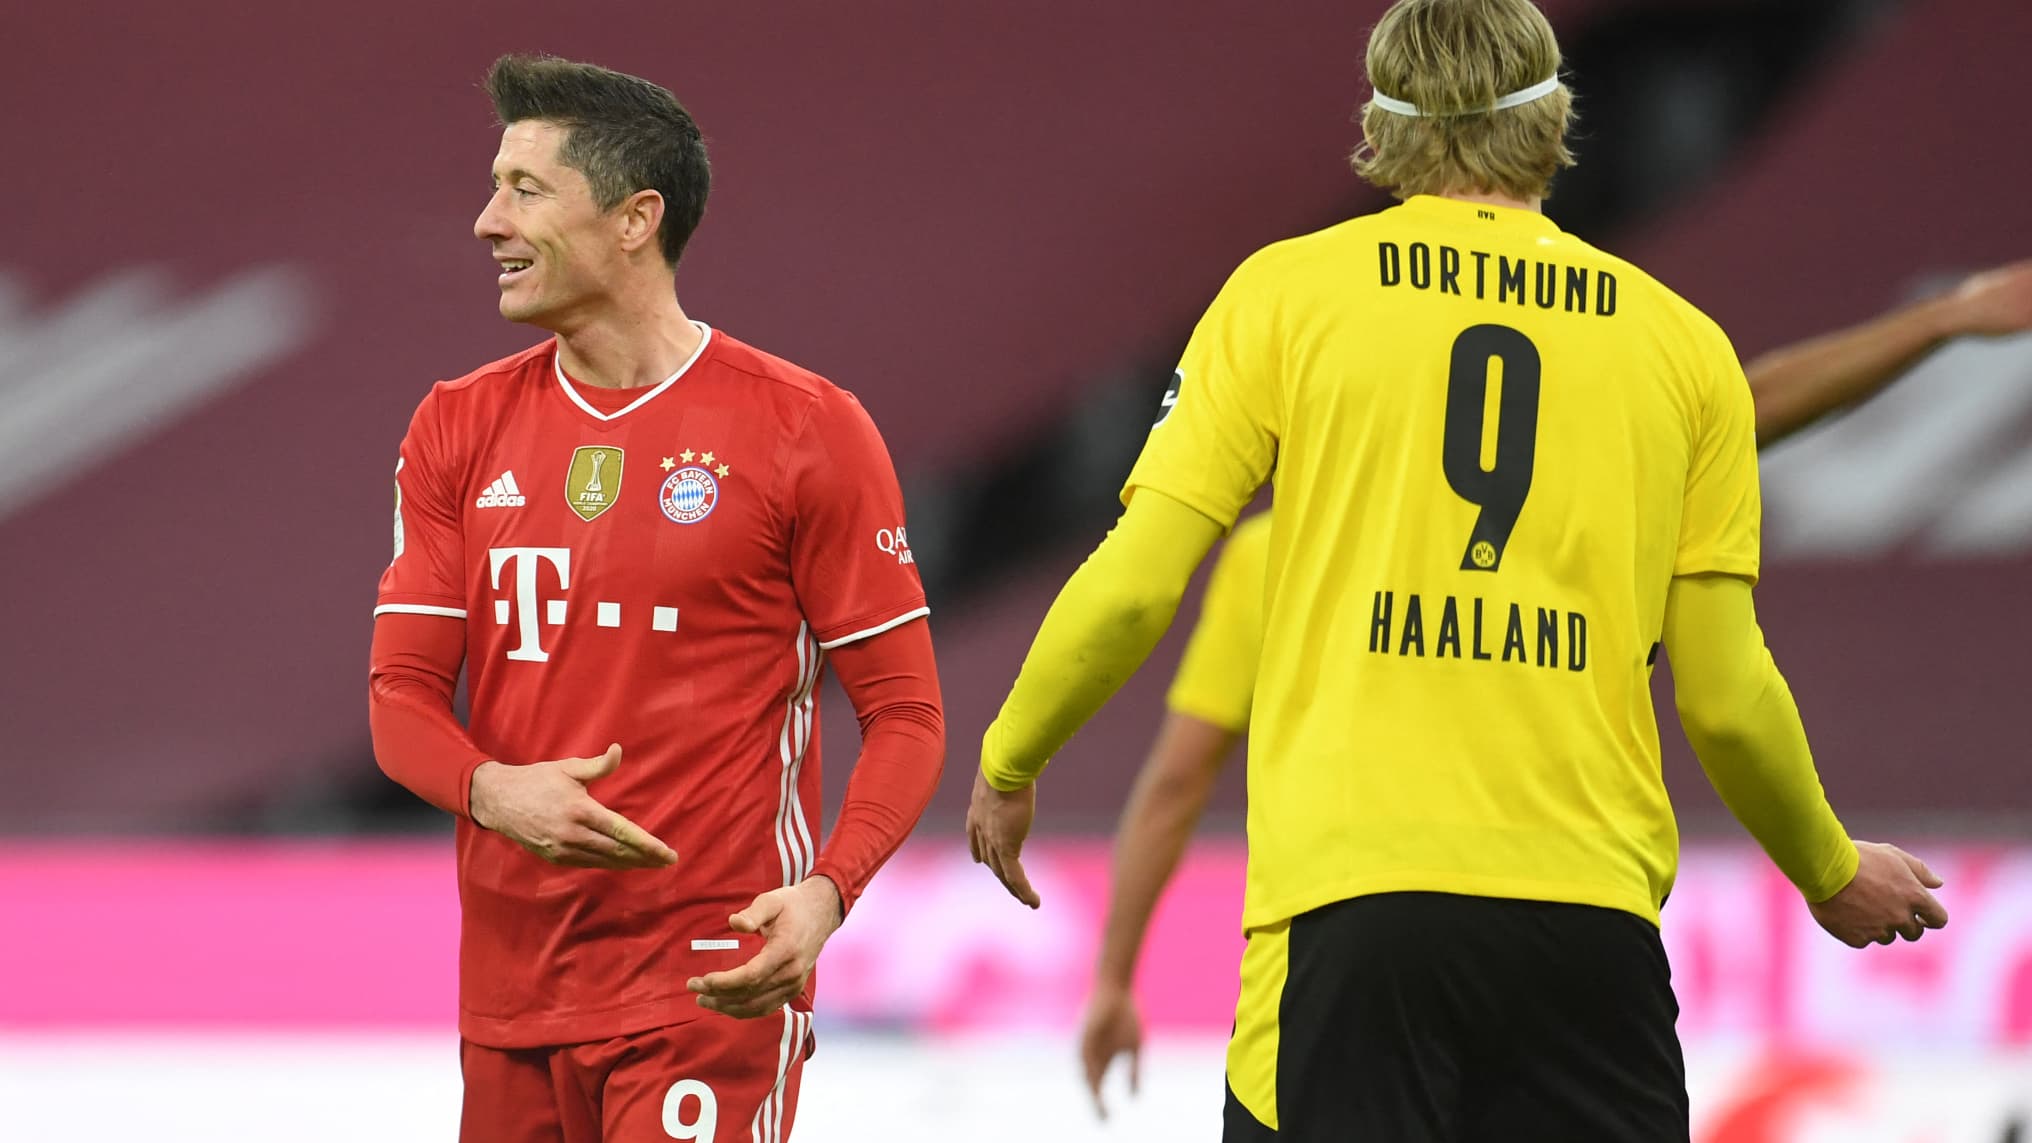 Le jeune Moukoko titulaire, les compos officielles de Dortmund vs Bayern Munich dévoilées